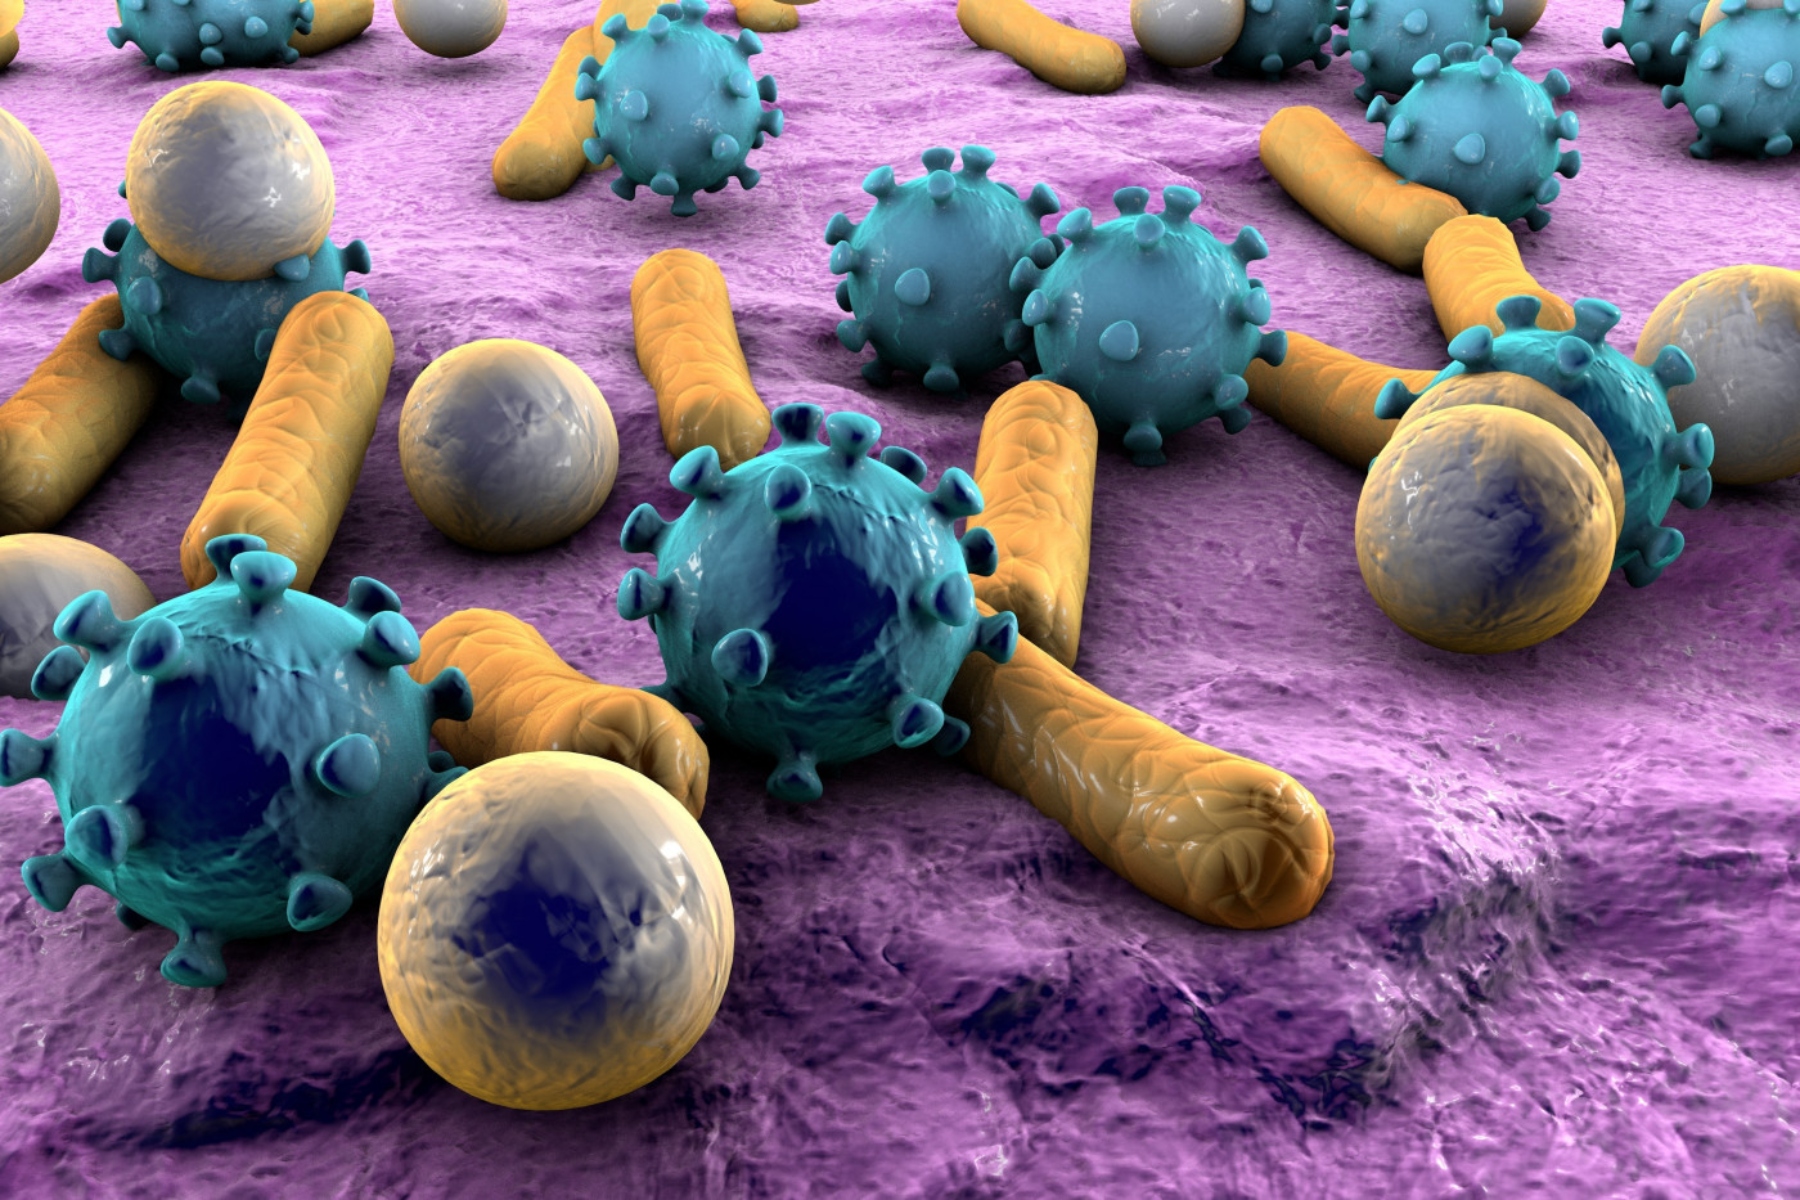 Εντερικό μικροβίωμα: Το εντερικό «virome» μπορεί να ευθύνεται για Φλεγμονώδεις νόσους του εντέρου